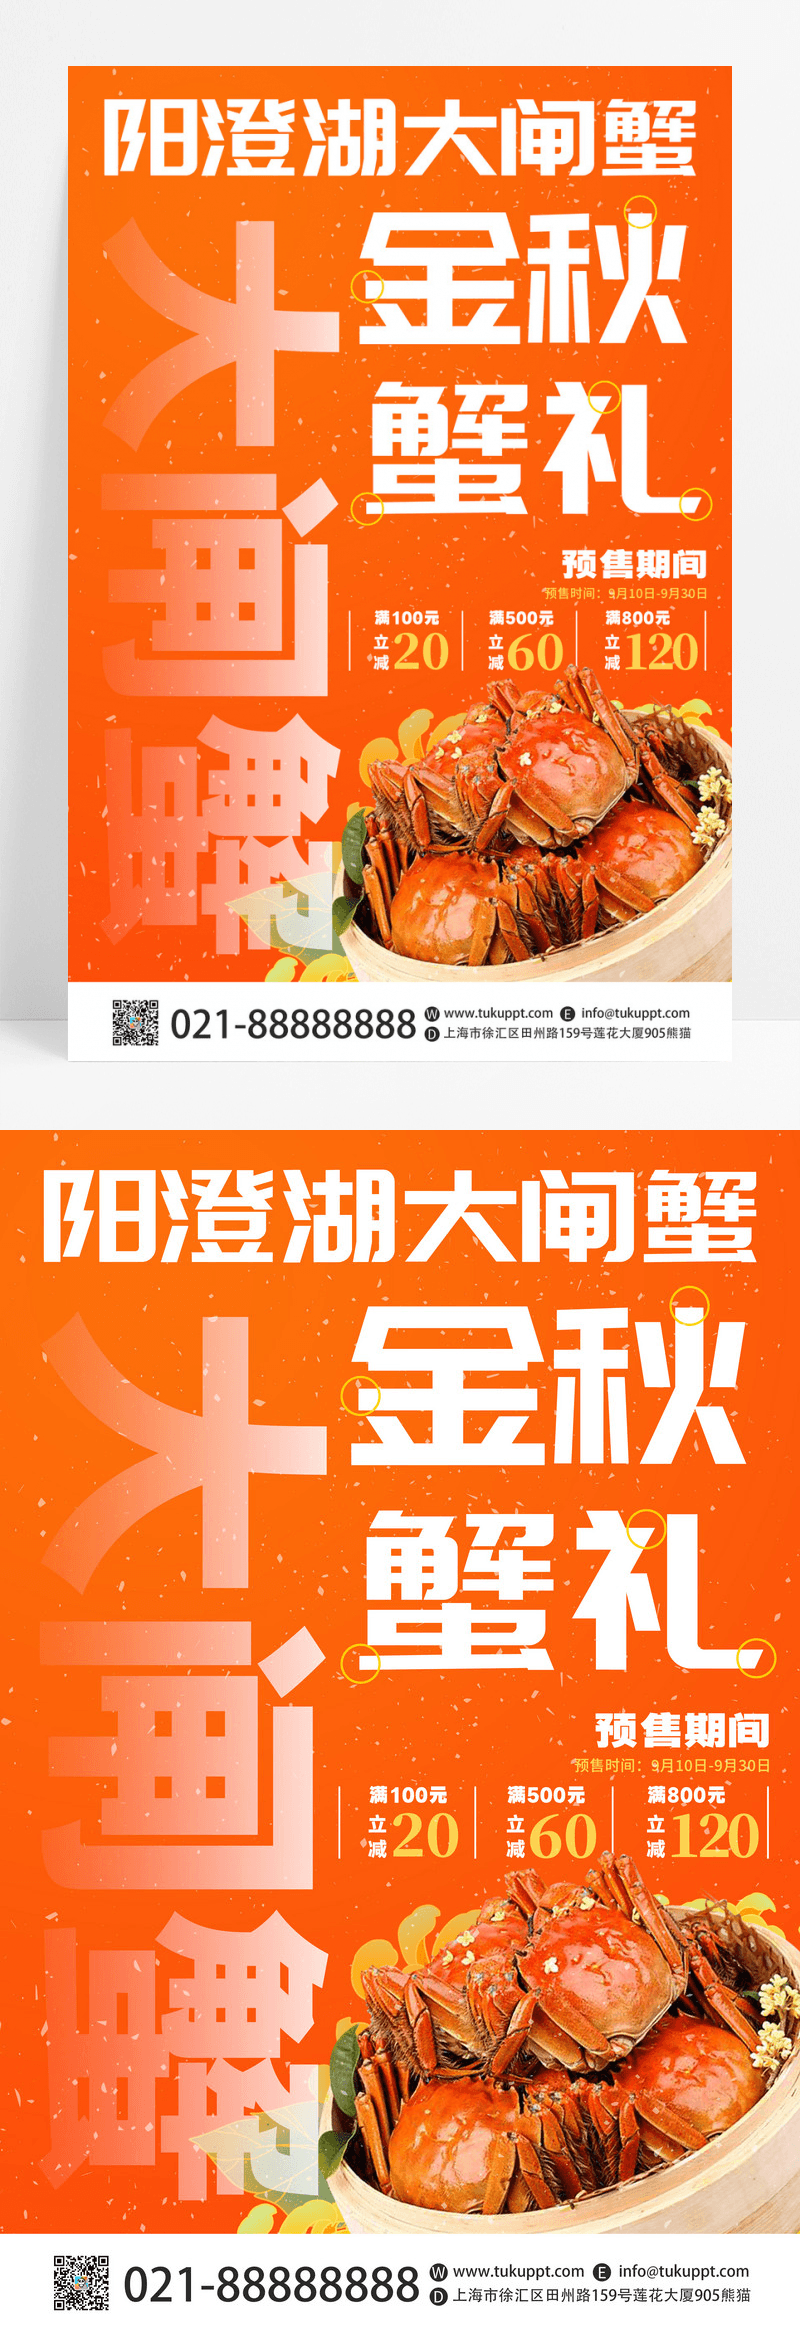 黄色创意阳澄湖大闸蟹餐饮美食活动促销海报